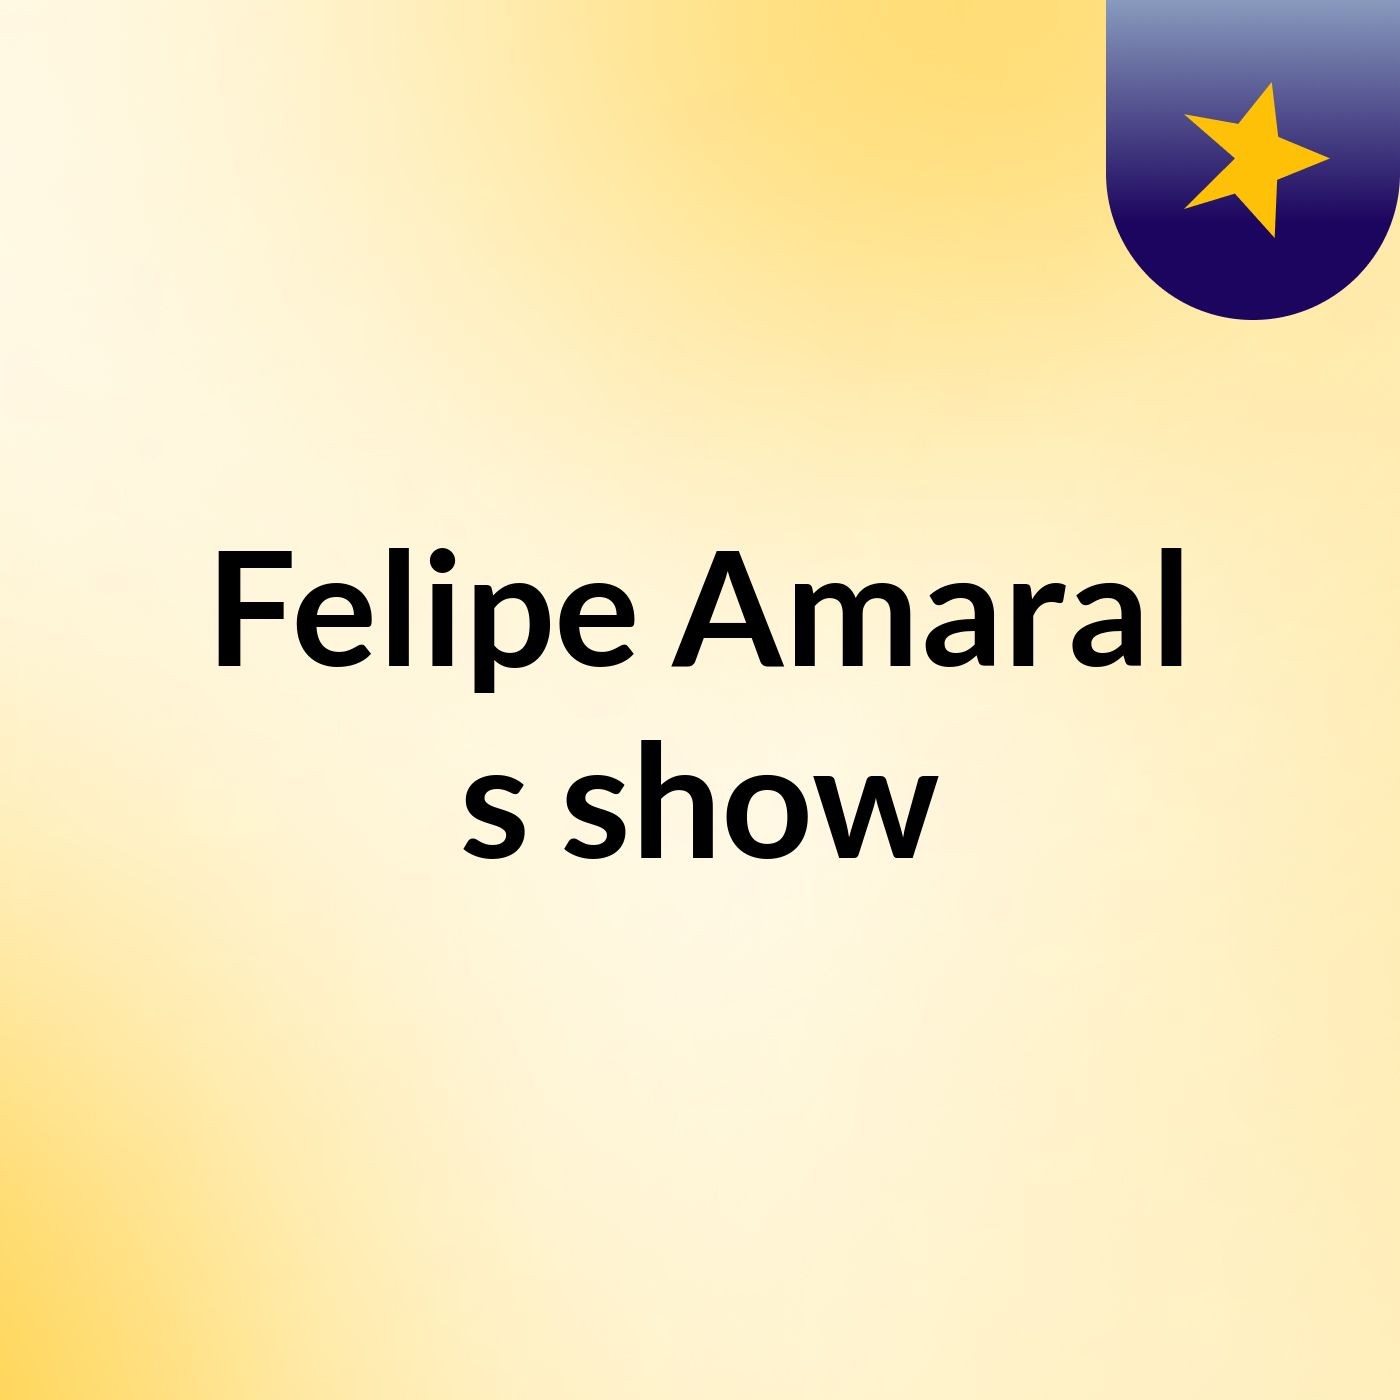 Felipe Amaral's show